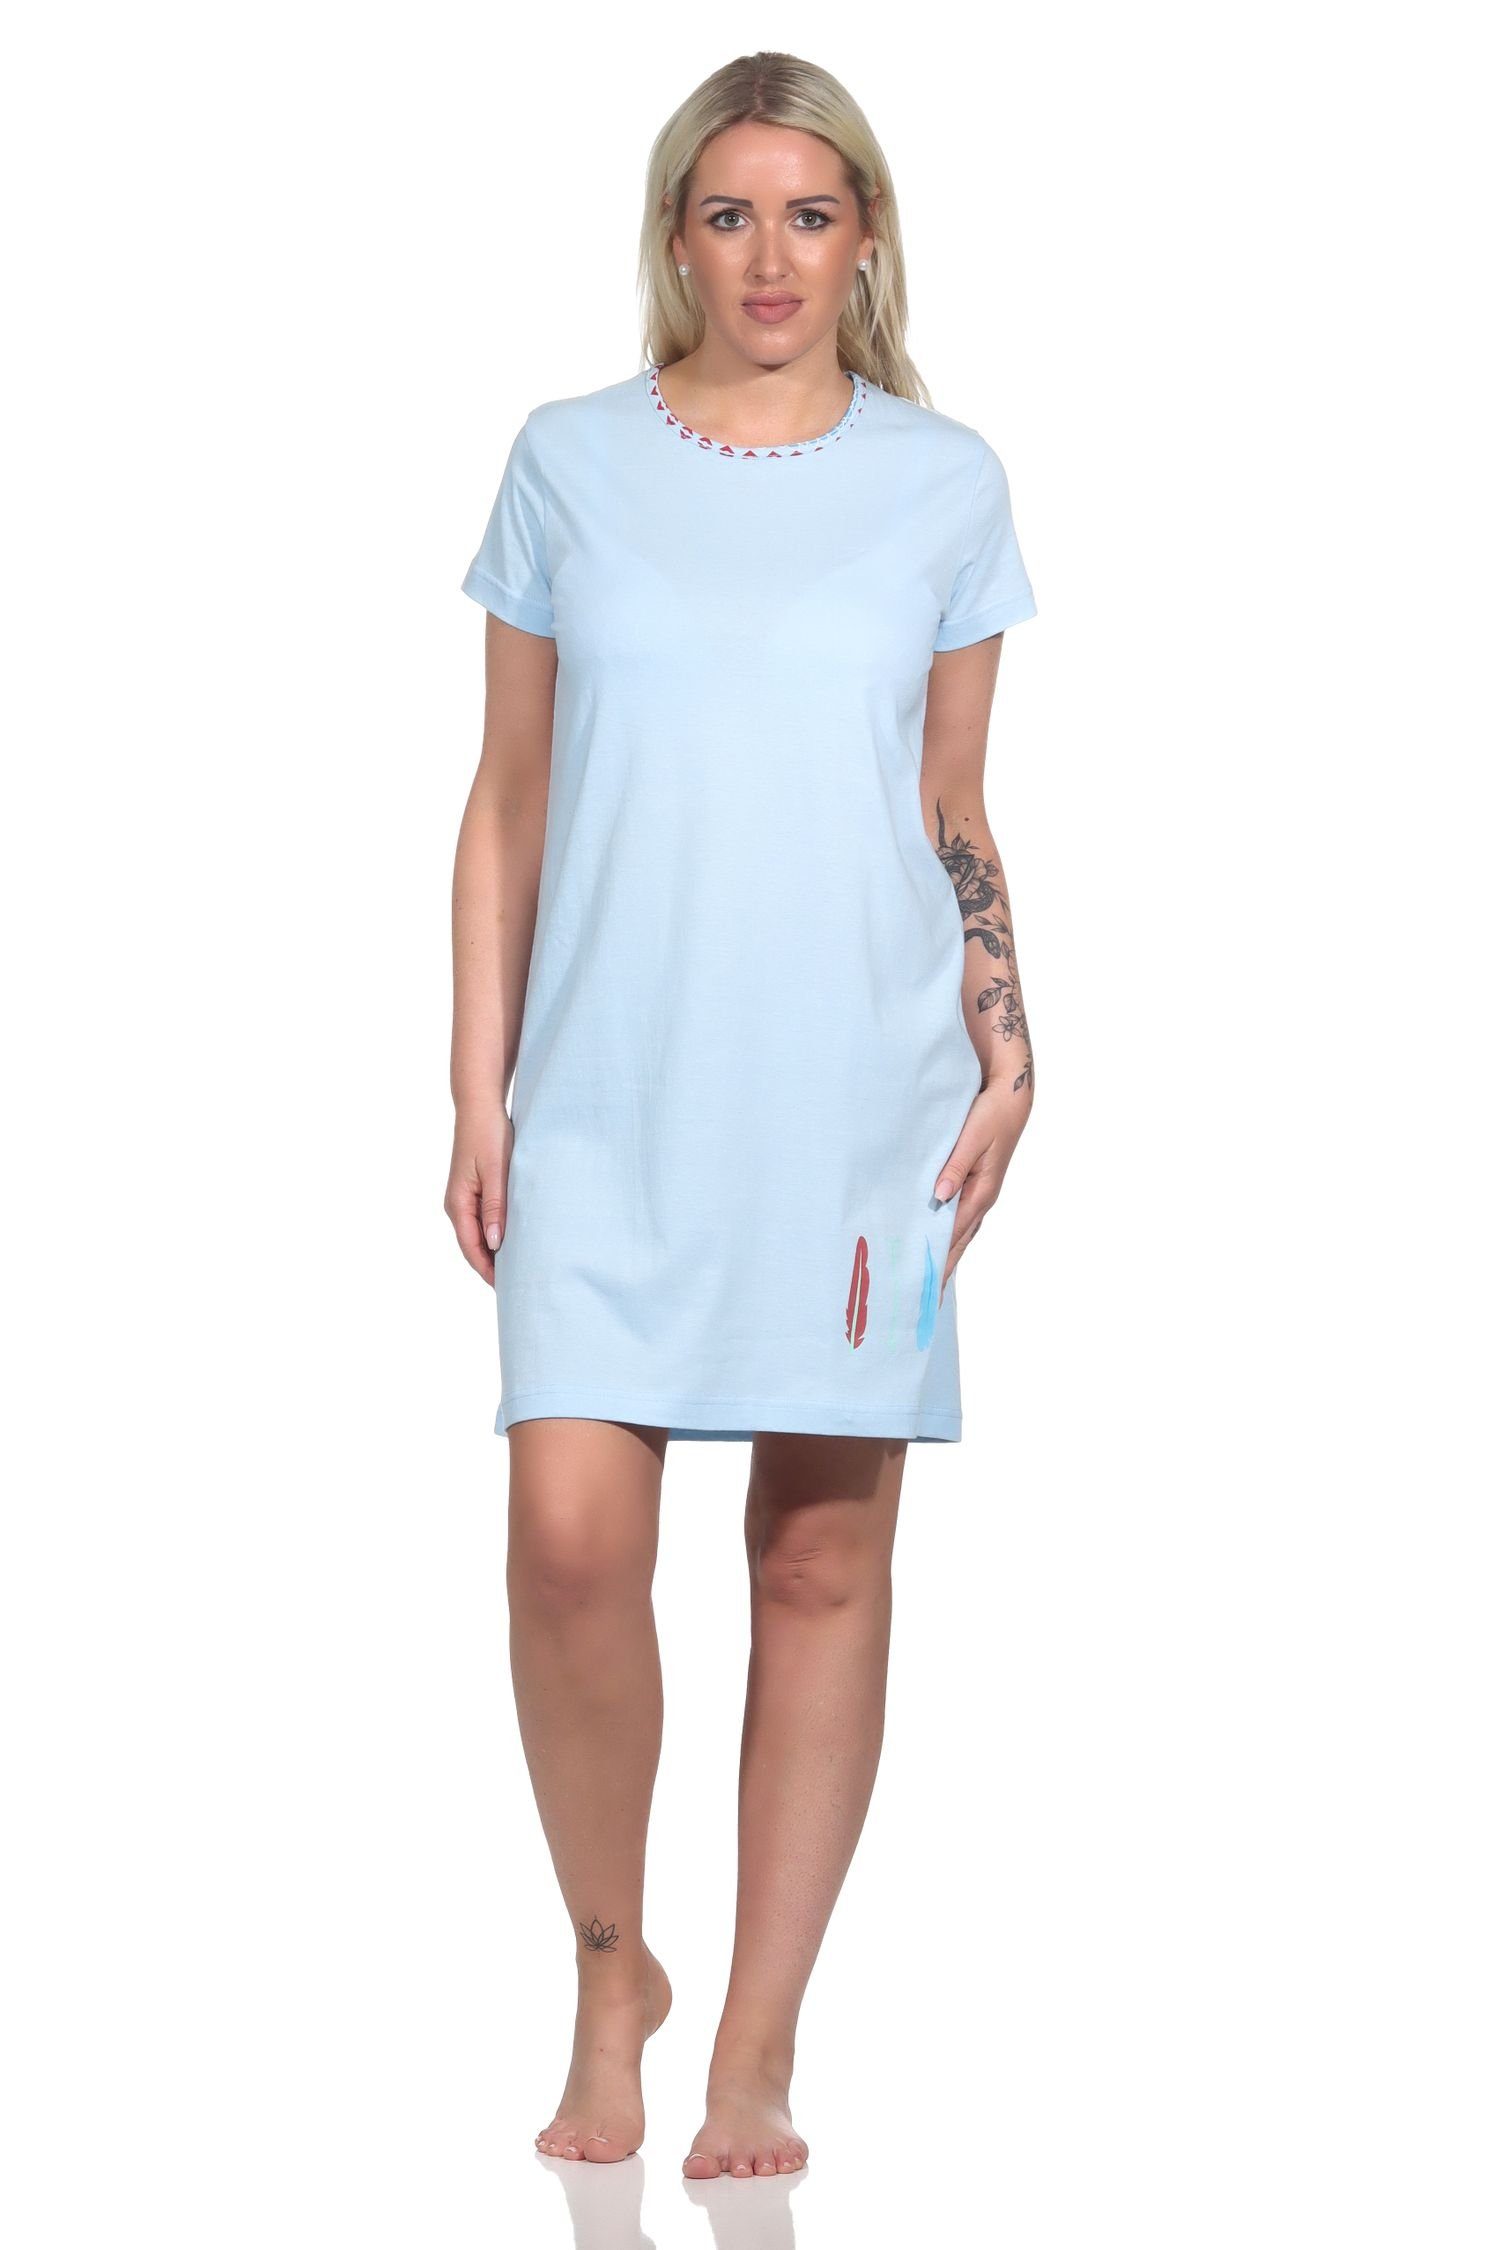 RELAX by Normann Nachthemd Damen Nachthemd halbarm, Bigshirt mit Feder- und Pfeil-Motiv blau | Nachthemden